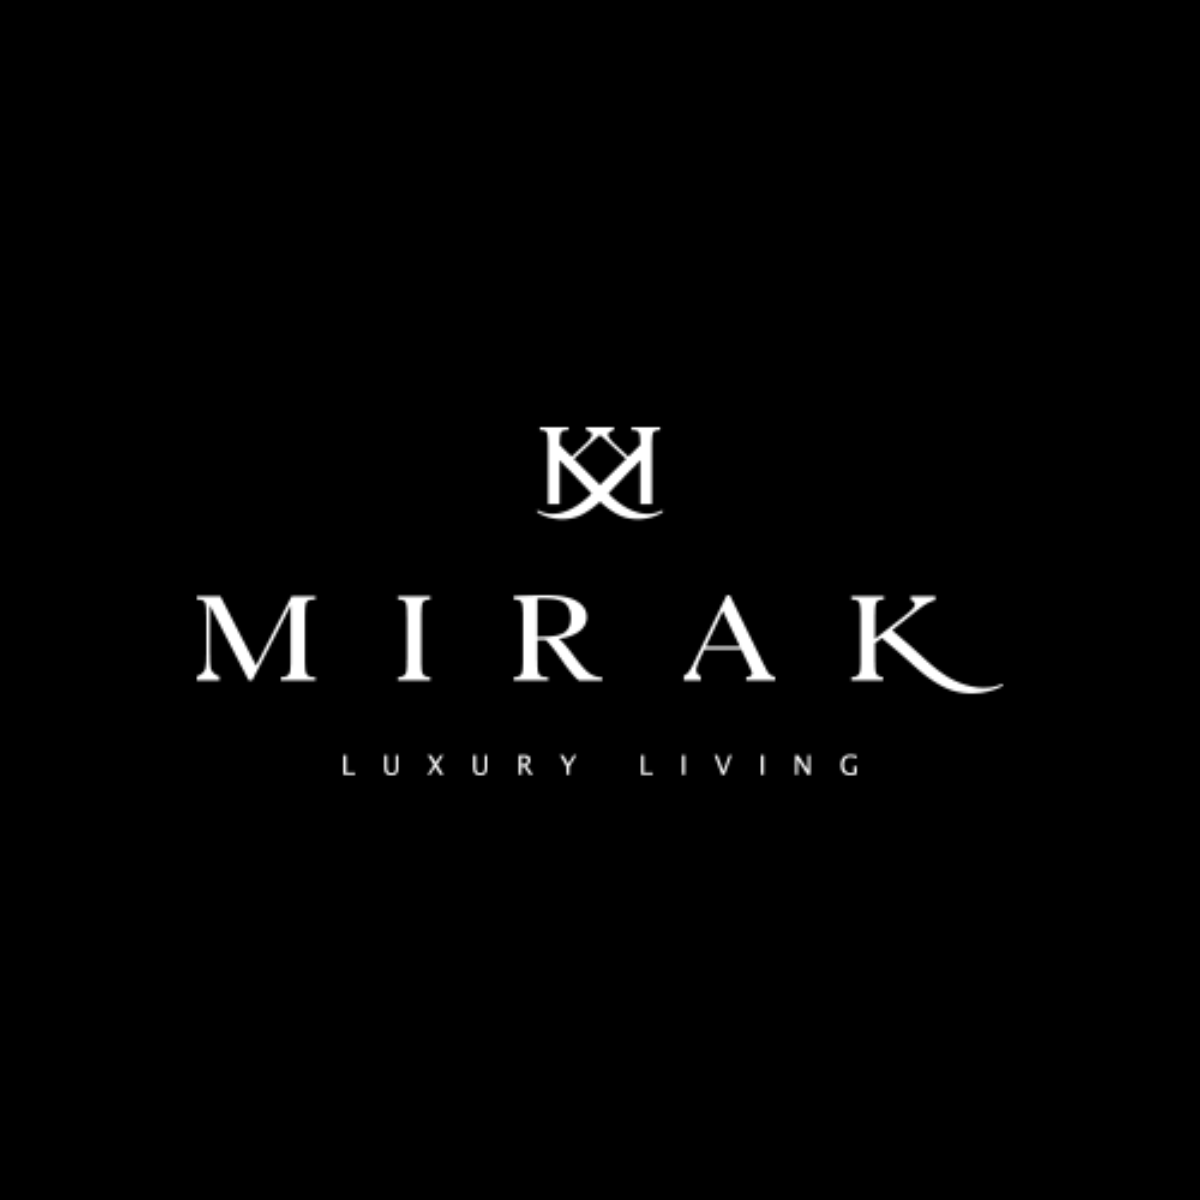 mirak_desarrollos_elegance_clientes_recientes-41